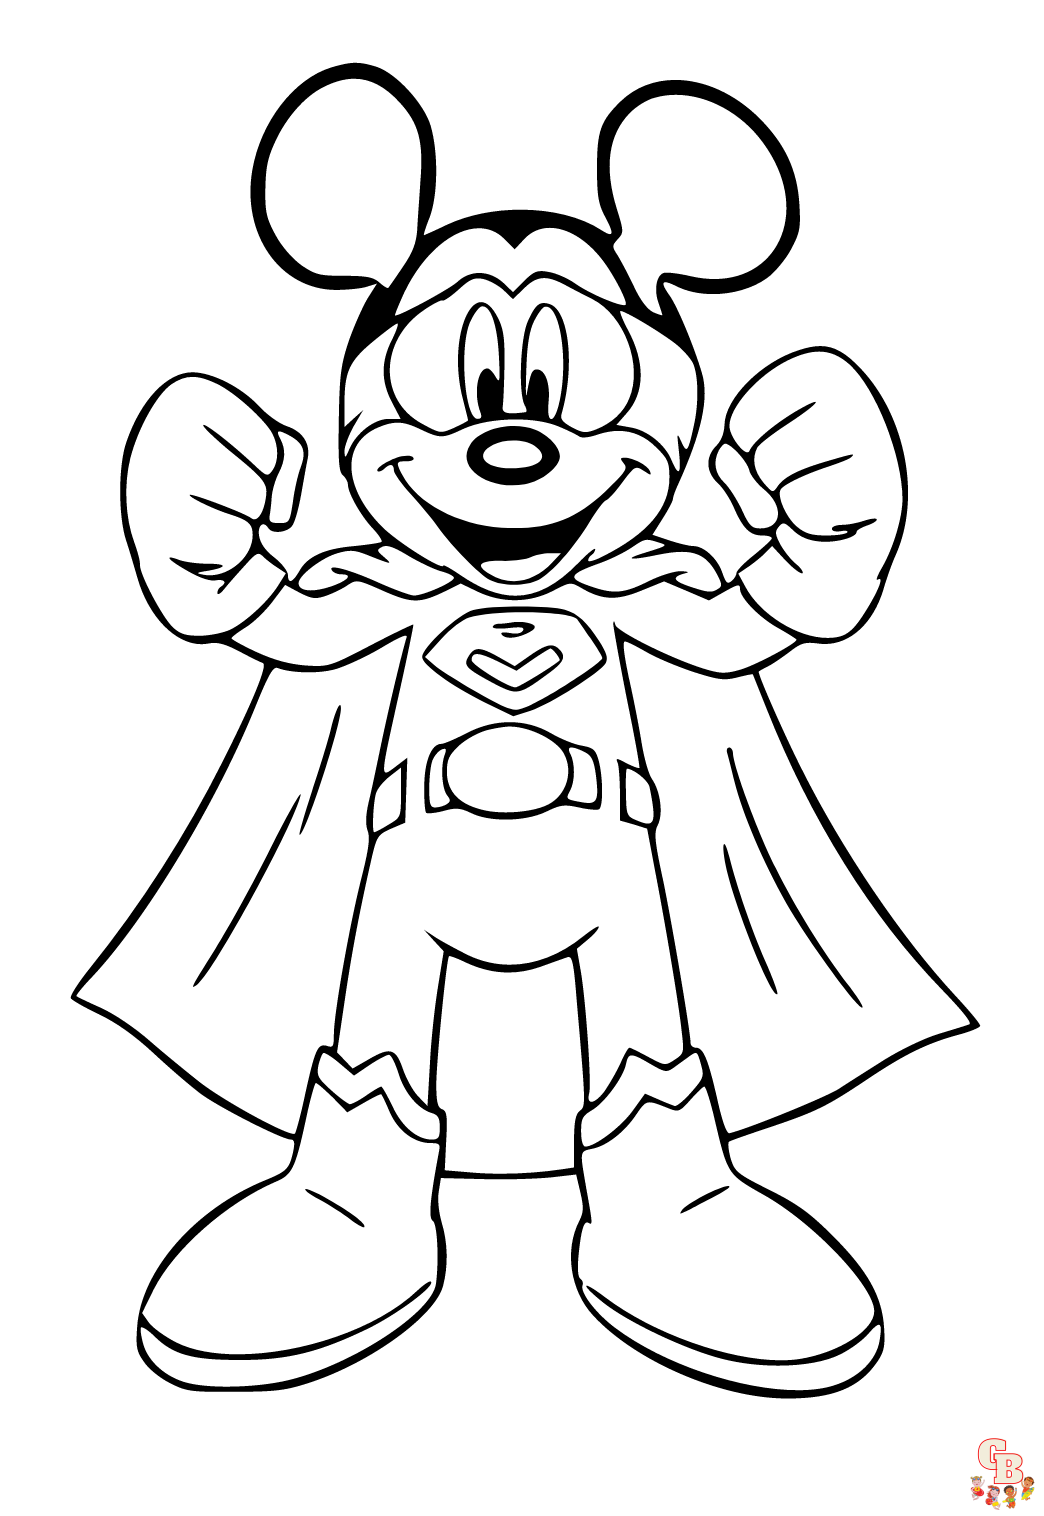 Download gratis kleurplaten van Mickey Mouse - Kleurplaat Mickey Mouse en vrienden